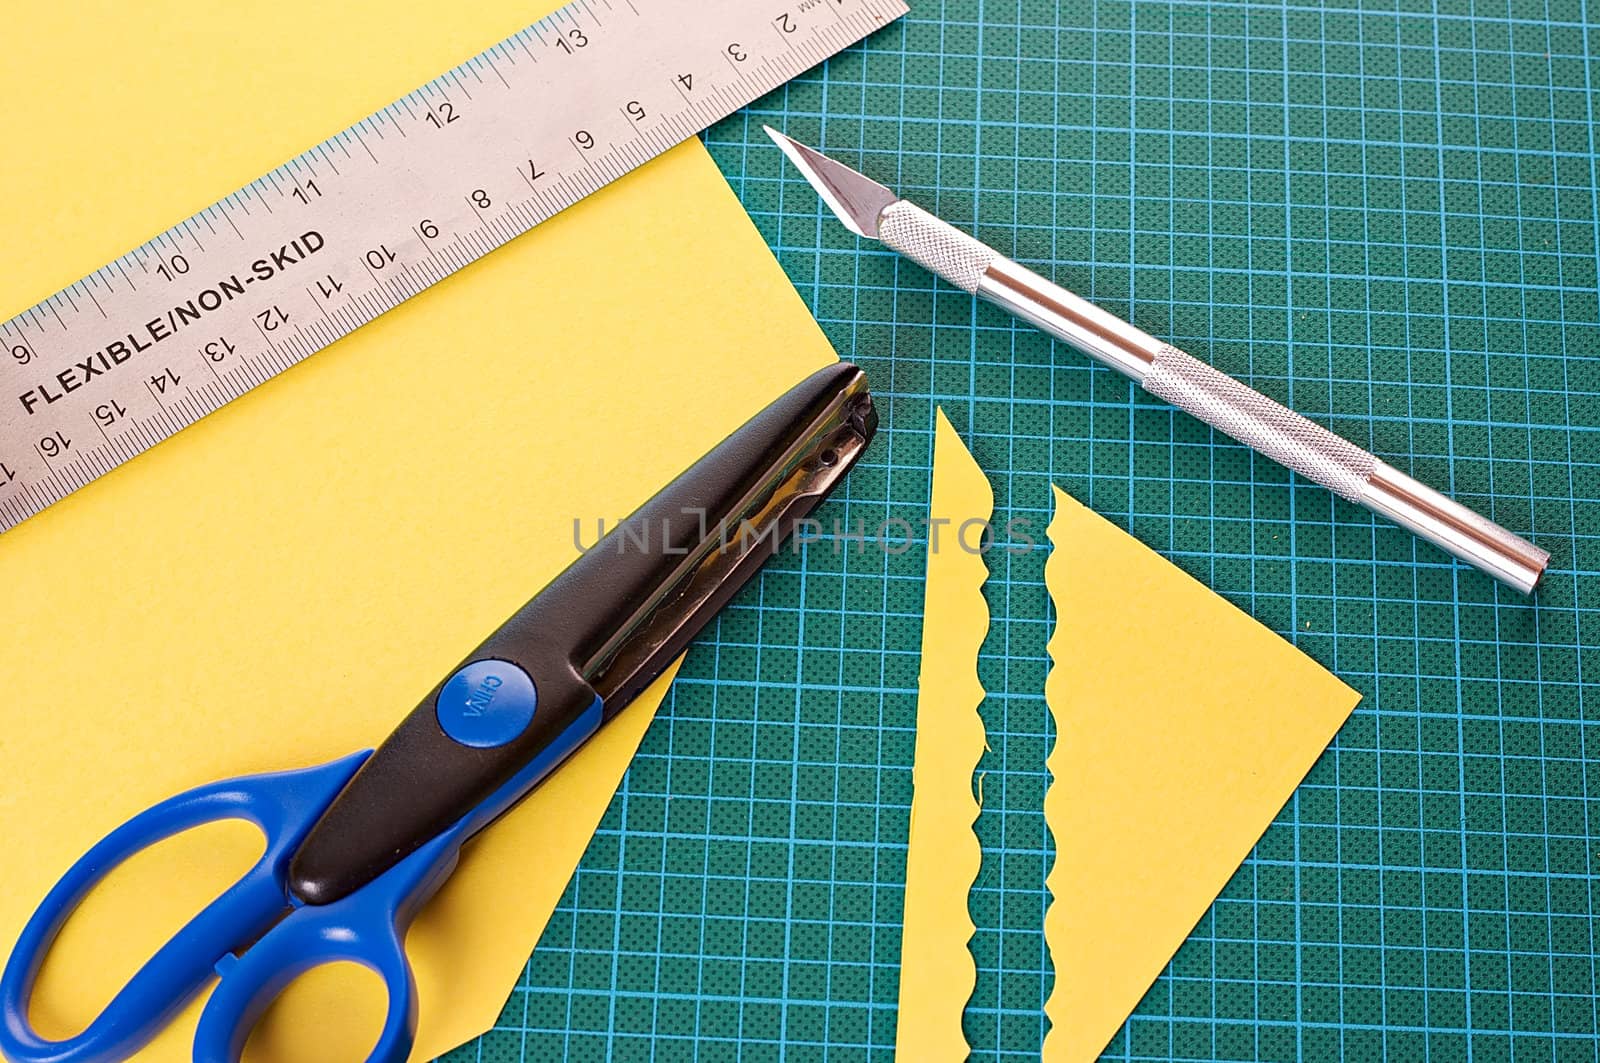 Scrapbooking material: ruler, scissors, mat and knife